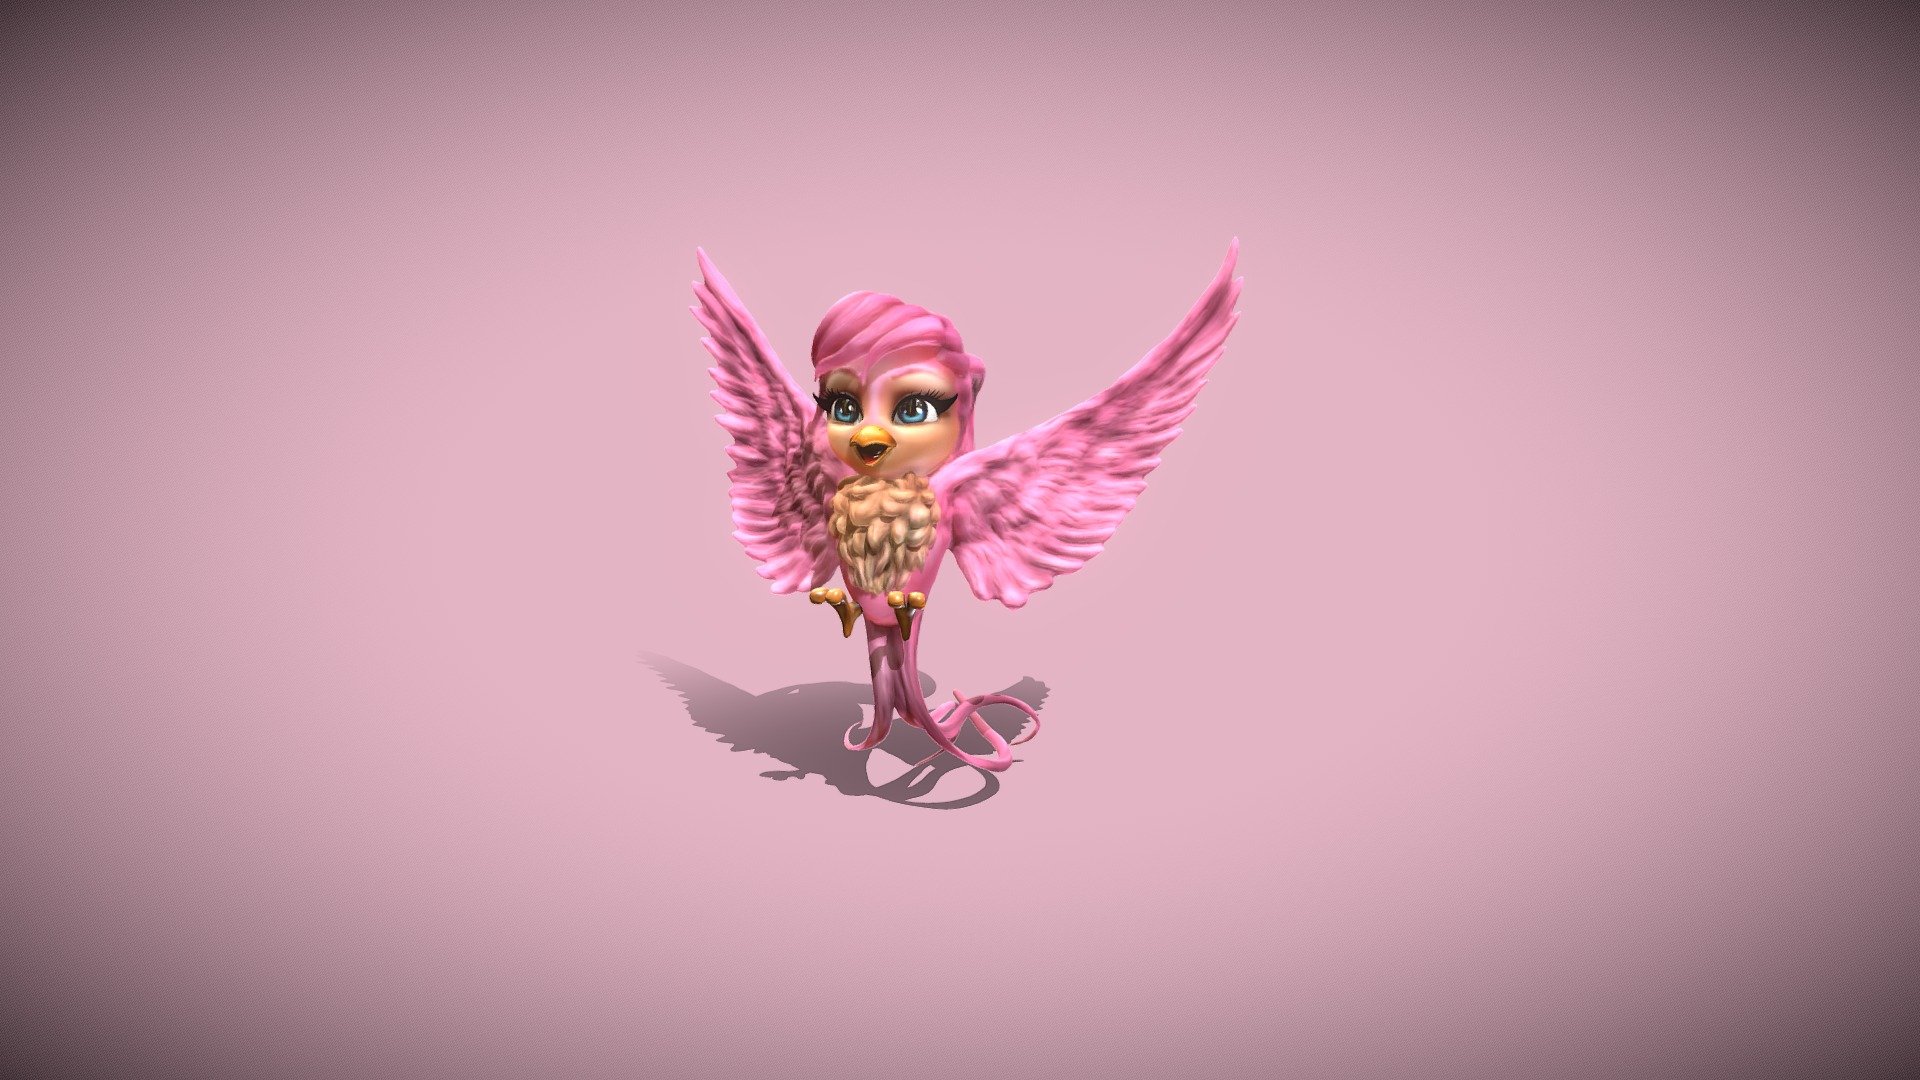 Litlle cute pink bird - Little Bird - Buy Royalty Free 3D model by benjamincolombier 3d model